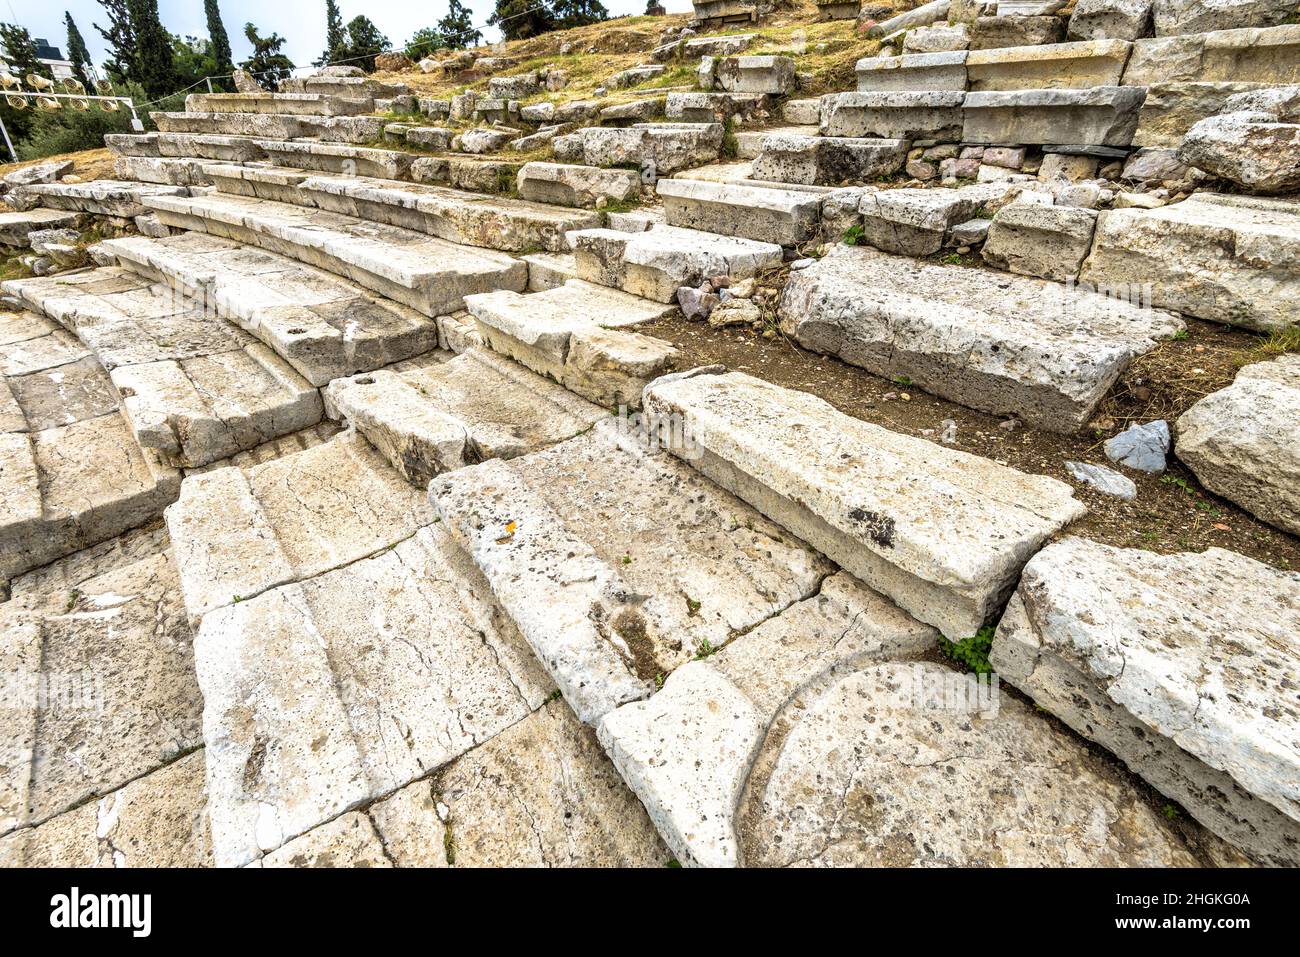 Sedili in pietra del Teatro di Dioniso ai piedi dell'Acropoli, Atene, Grecia. Antiche rovine greche da vicino. Dettaglio dell'edificio storico della citta' vecchia di Atene. Foto Stock